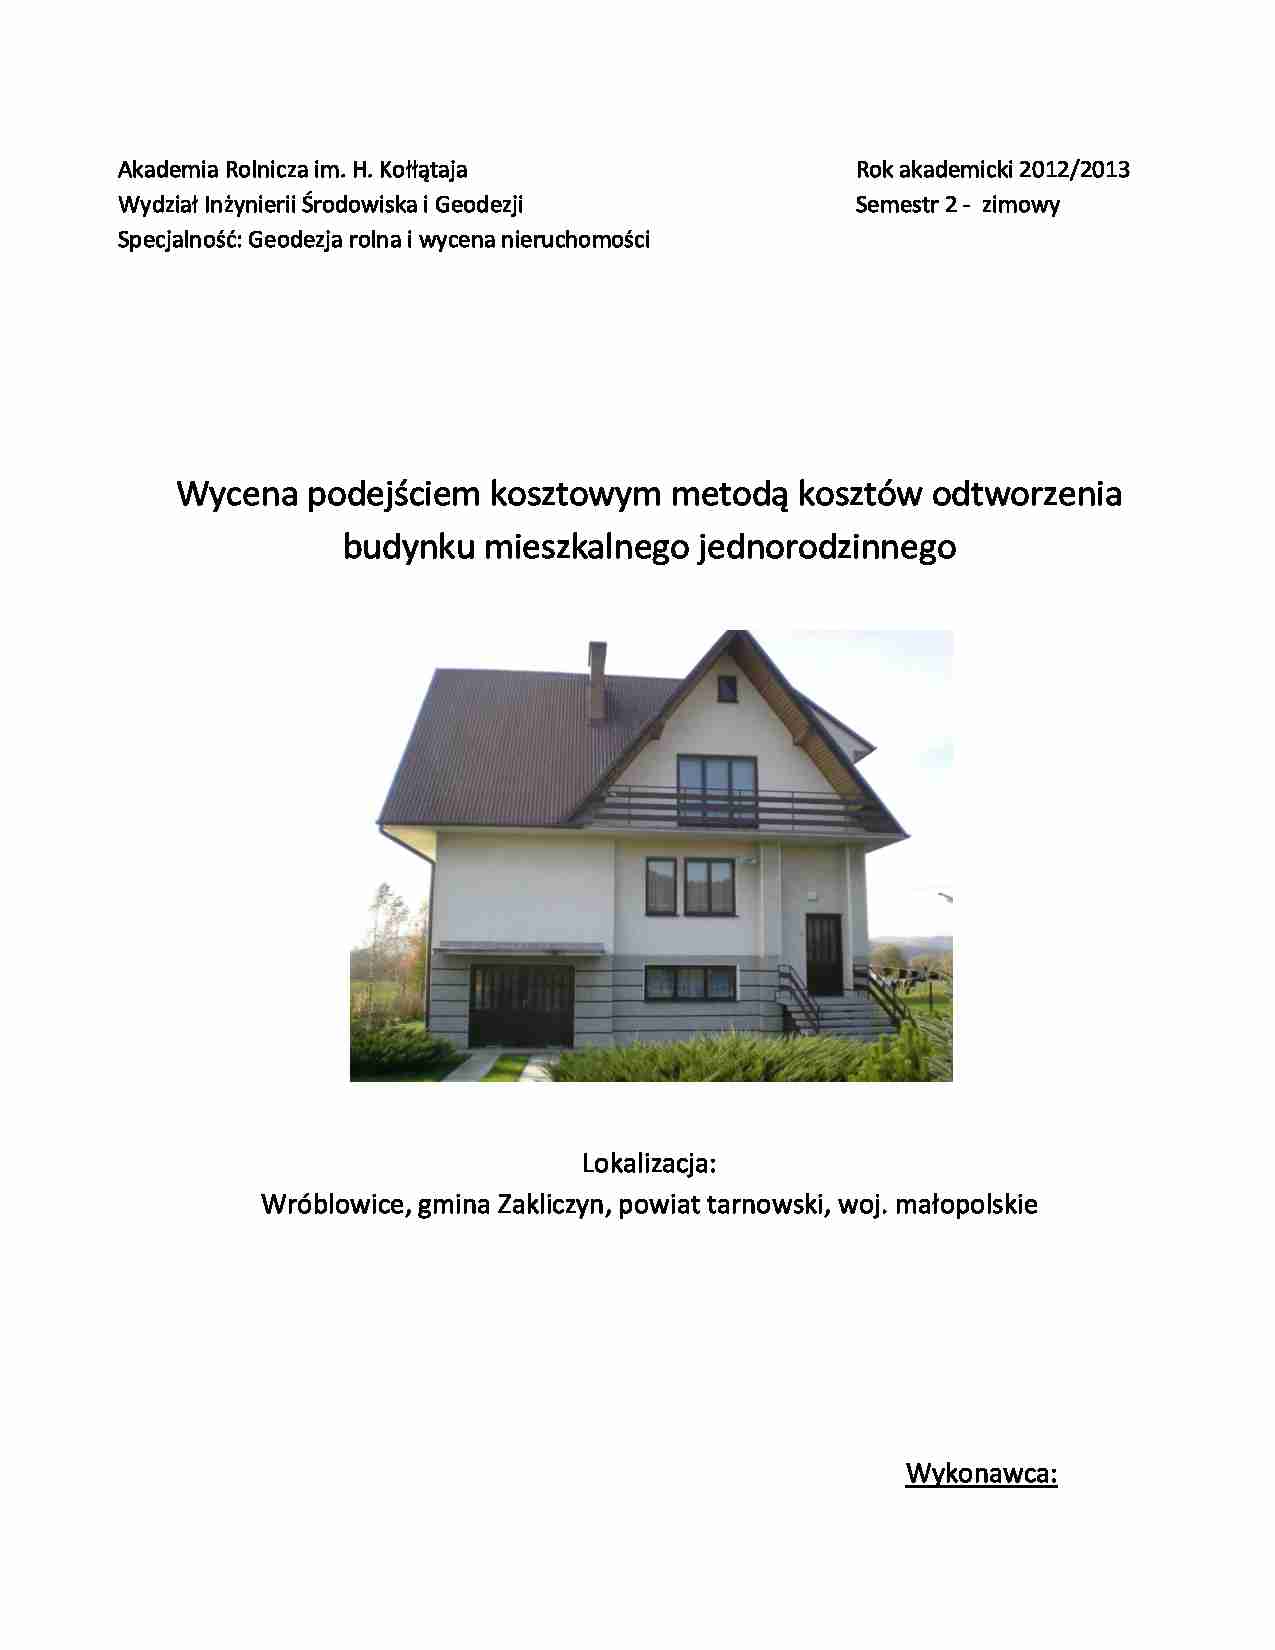 Wycena podejściem kosztowym metodą kosztów odtworzenia budynku mieszkalnego jednorodzinnego- sprawozdanie - strona 1